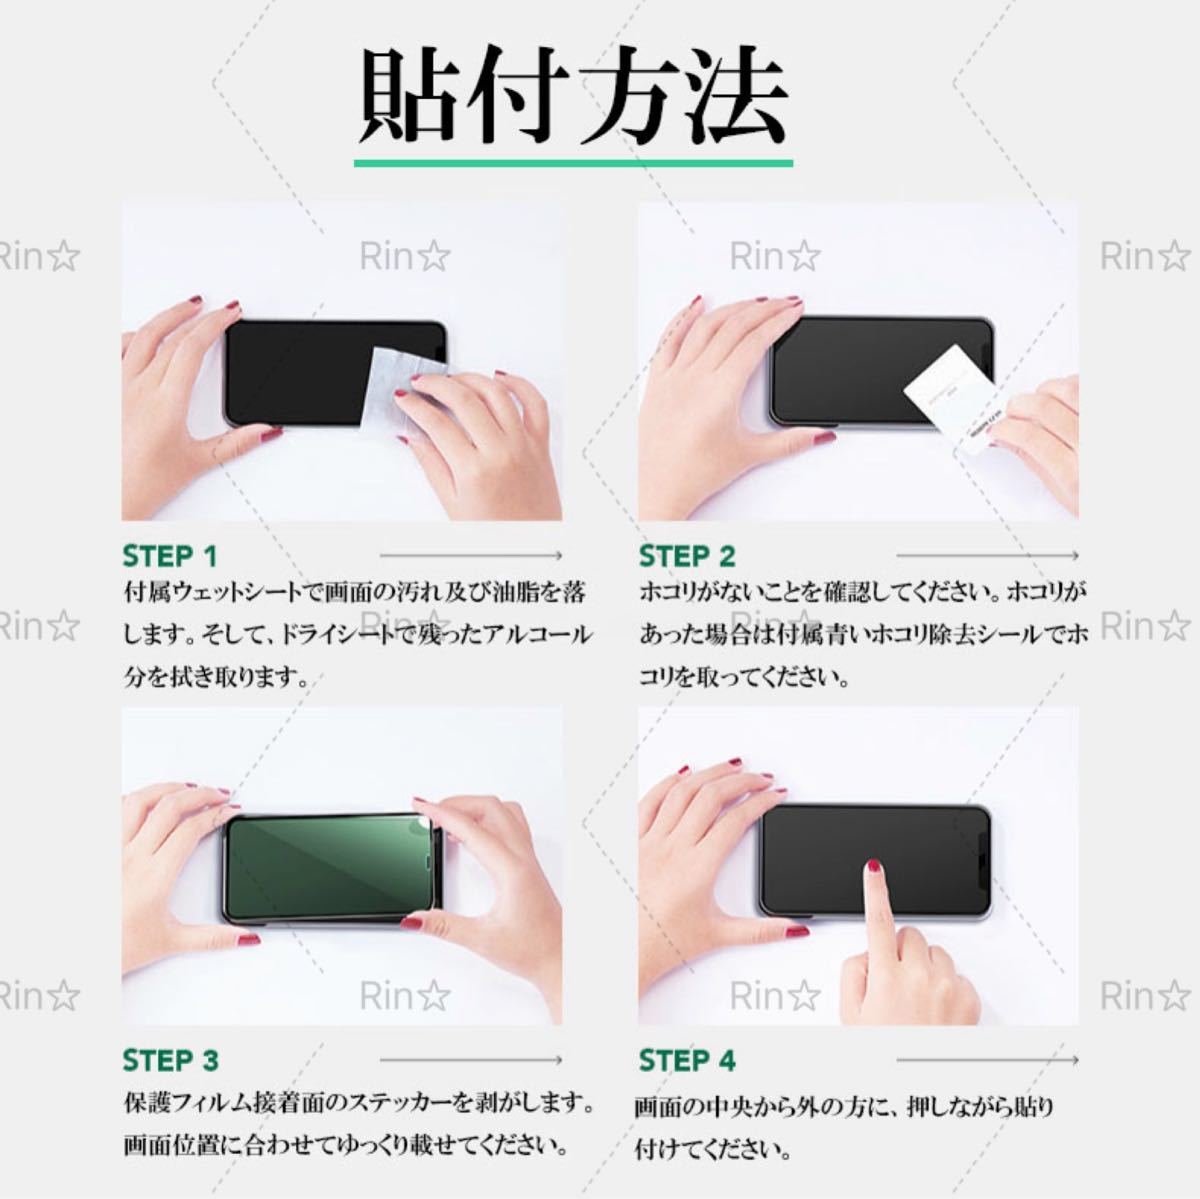 即納最大半額 iPhone 13 Miniガラスフィルムブルーライトカット 目の疲れ減軽 日本製 強化ガラス Elippa 3D全面保護 液晶保護フィルム9H硬度 耐衝撃 気泡ゼロ 貼り付け簡単 指紋防止